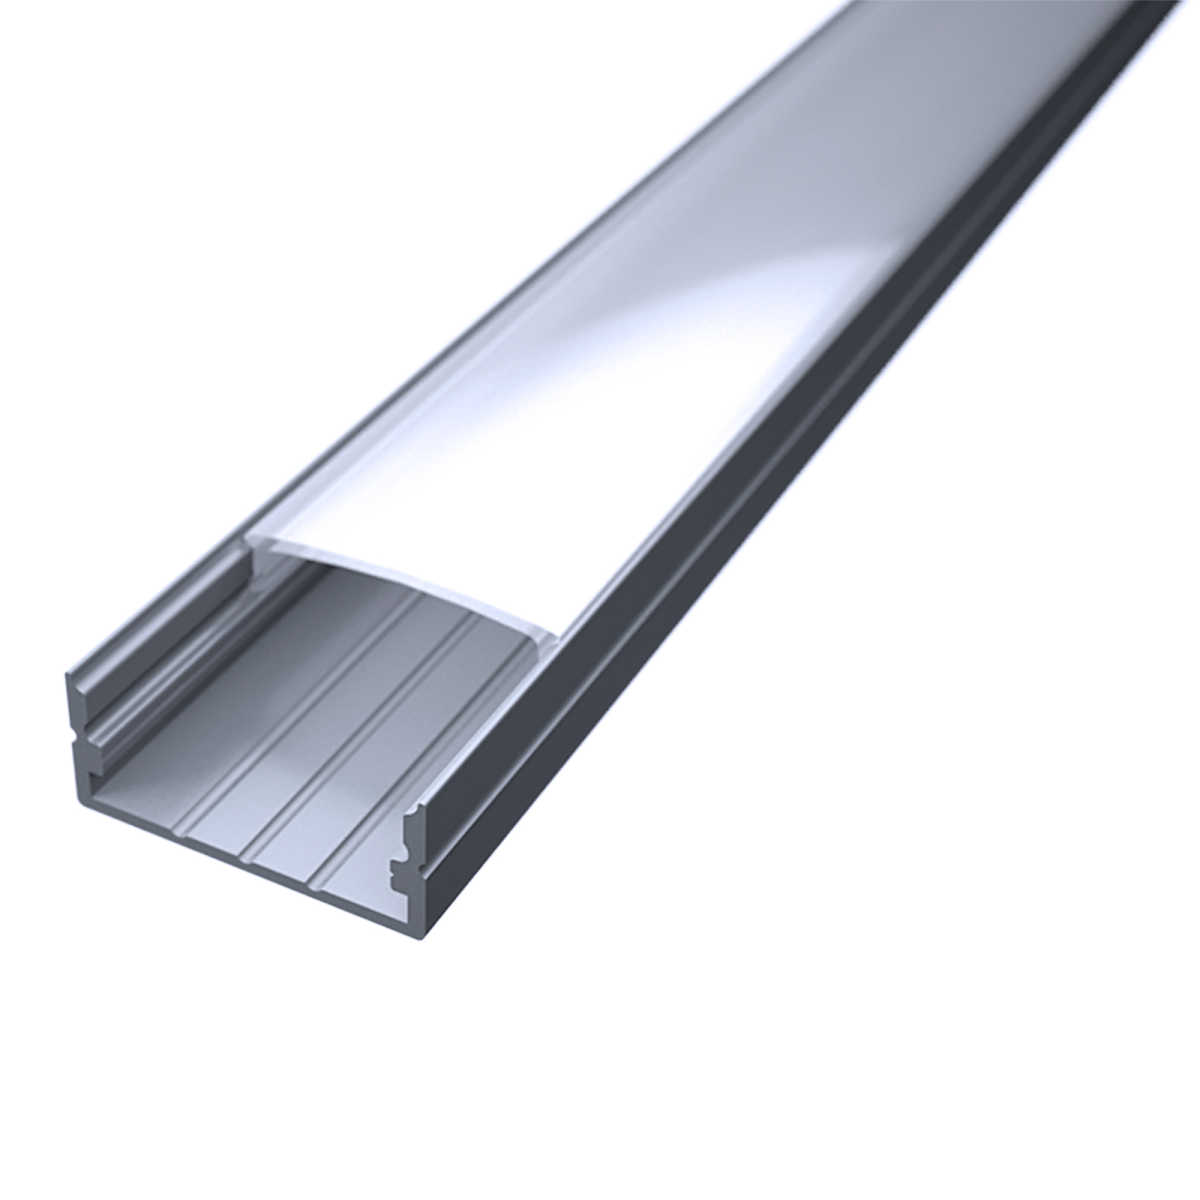 LED Flachprofil "Slim-Line max" | Abdeckung diffus | Zuschnitt auf 199cm |